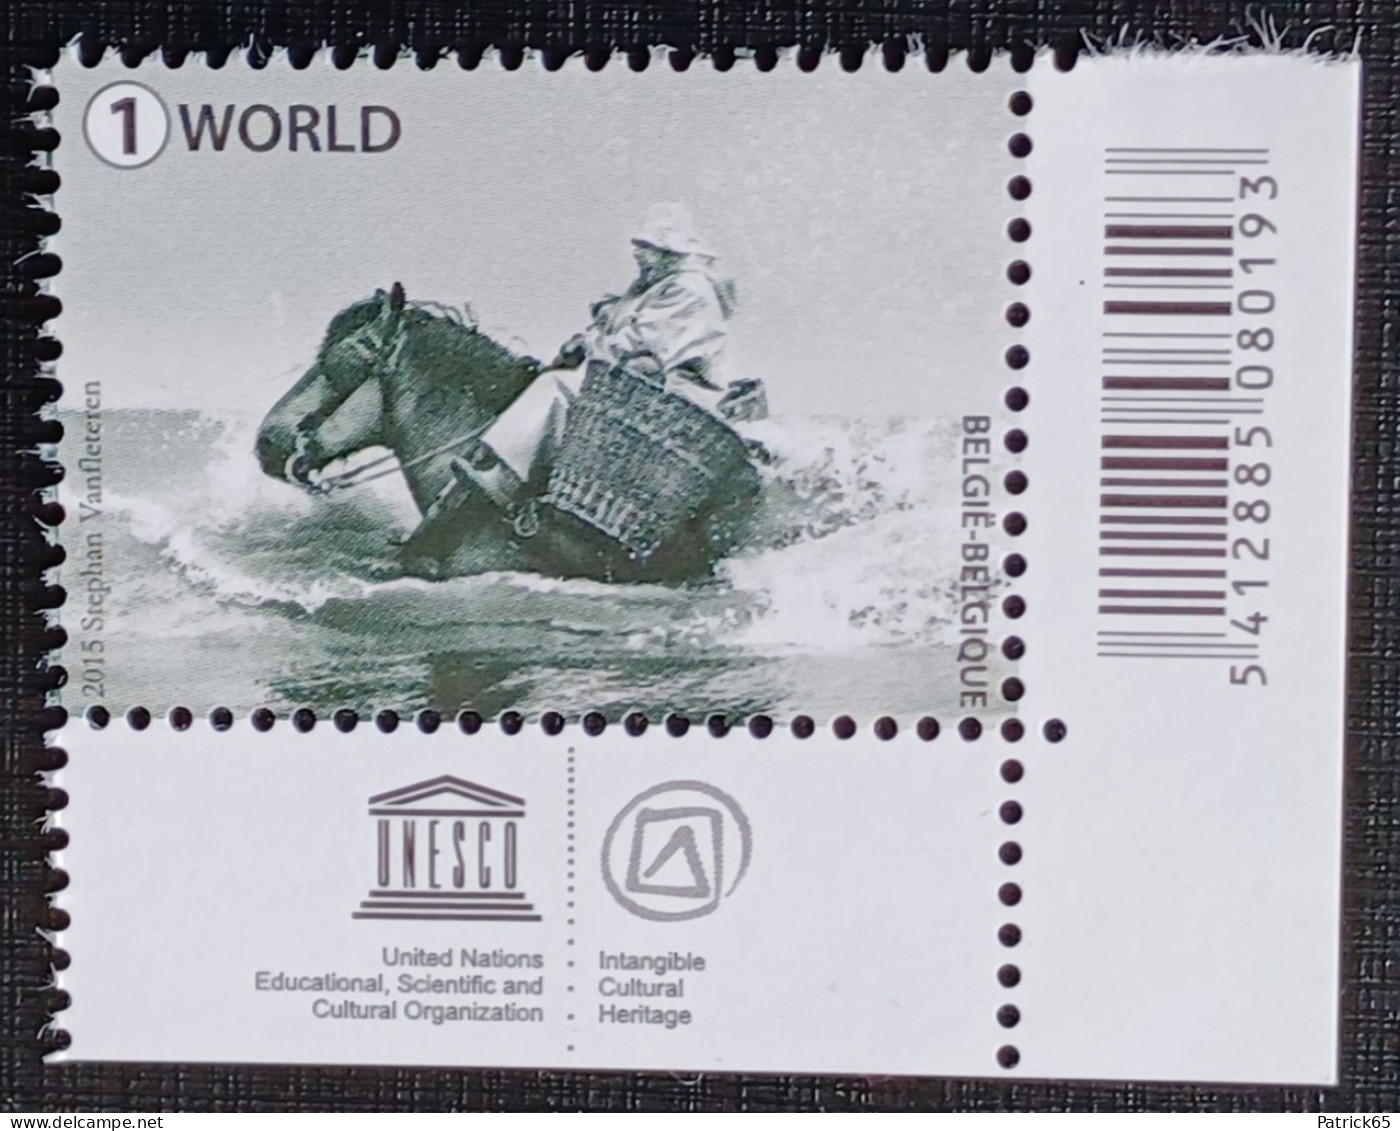 Belgie 2015 Obp.nr.4538 Garnaalvissers Te Paard - Unesco Werelderfgoed. MNH - Postfris - Ongebruikt